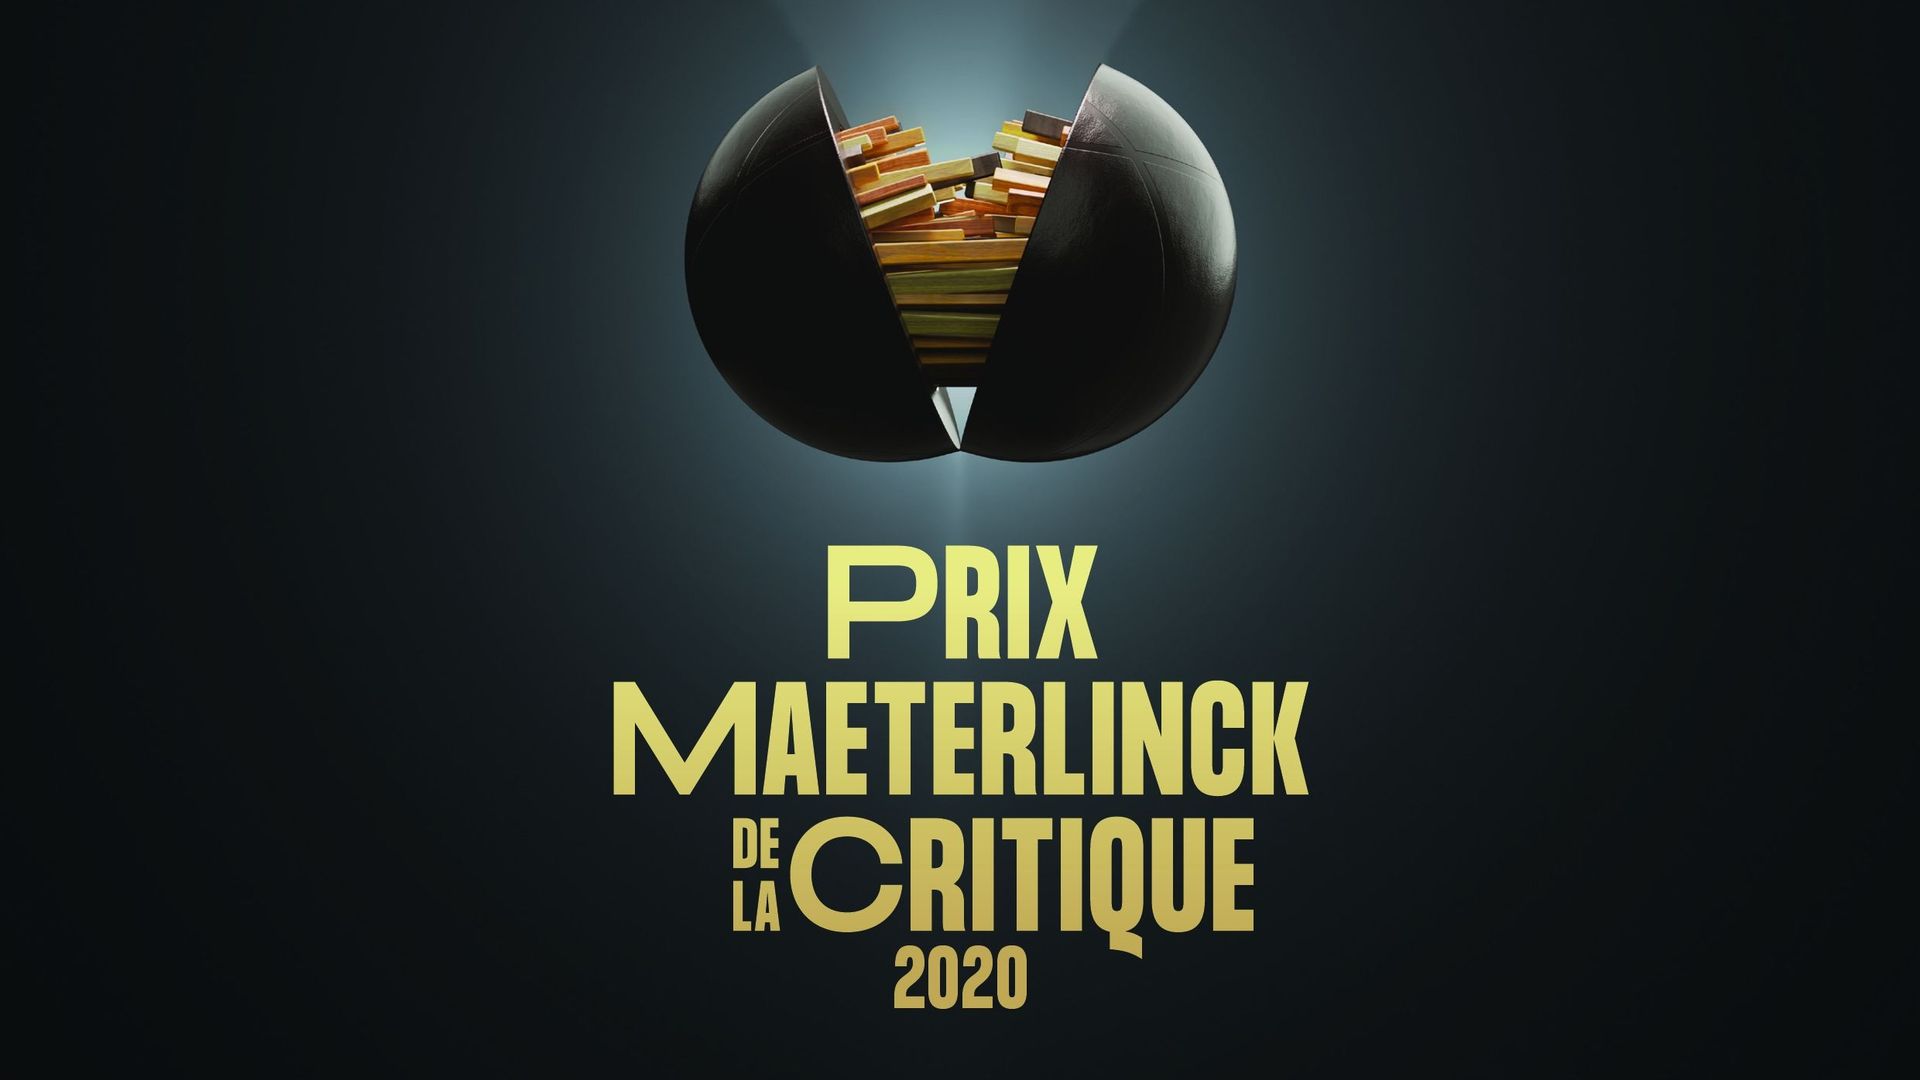 Les Prix Maeterlinck de la critique 2020 ont été remis virtuellement ce 21 septembre